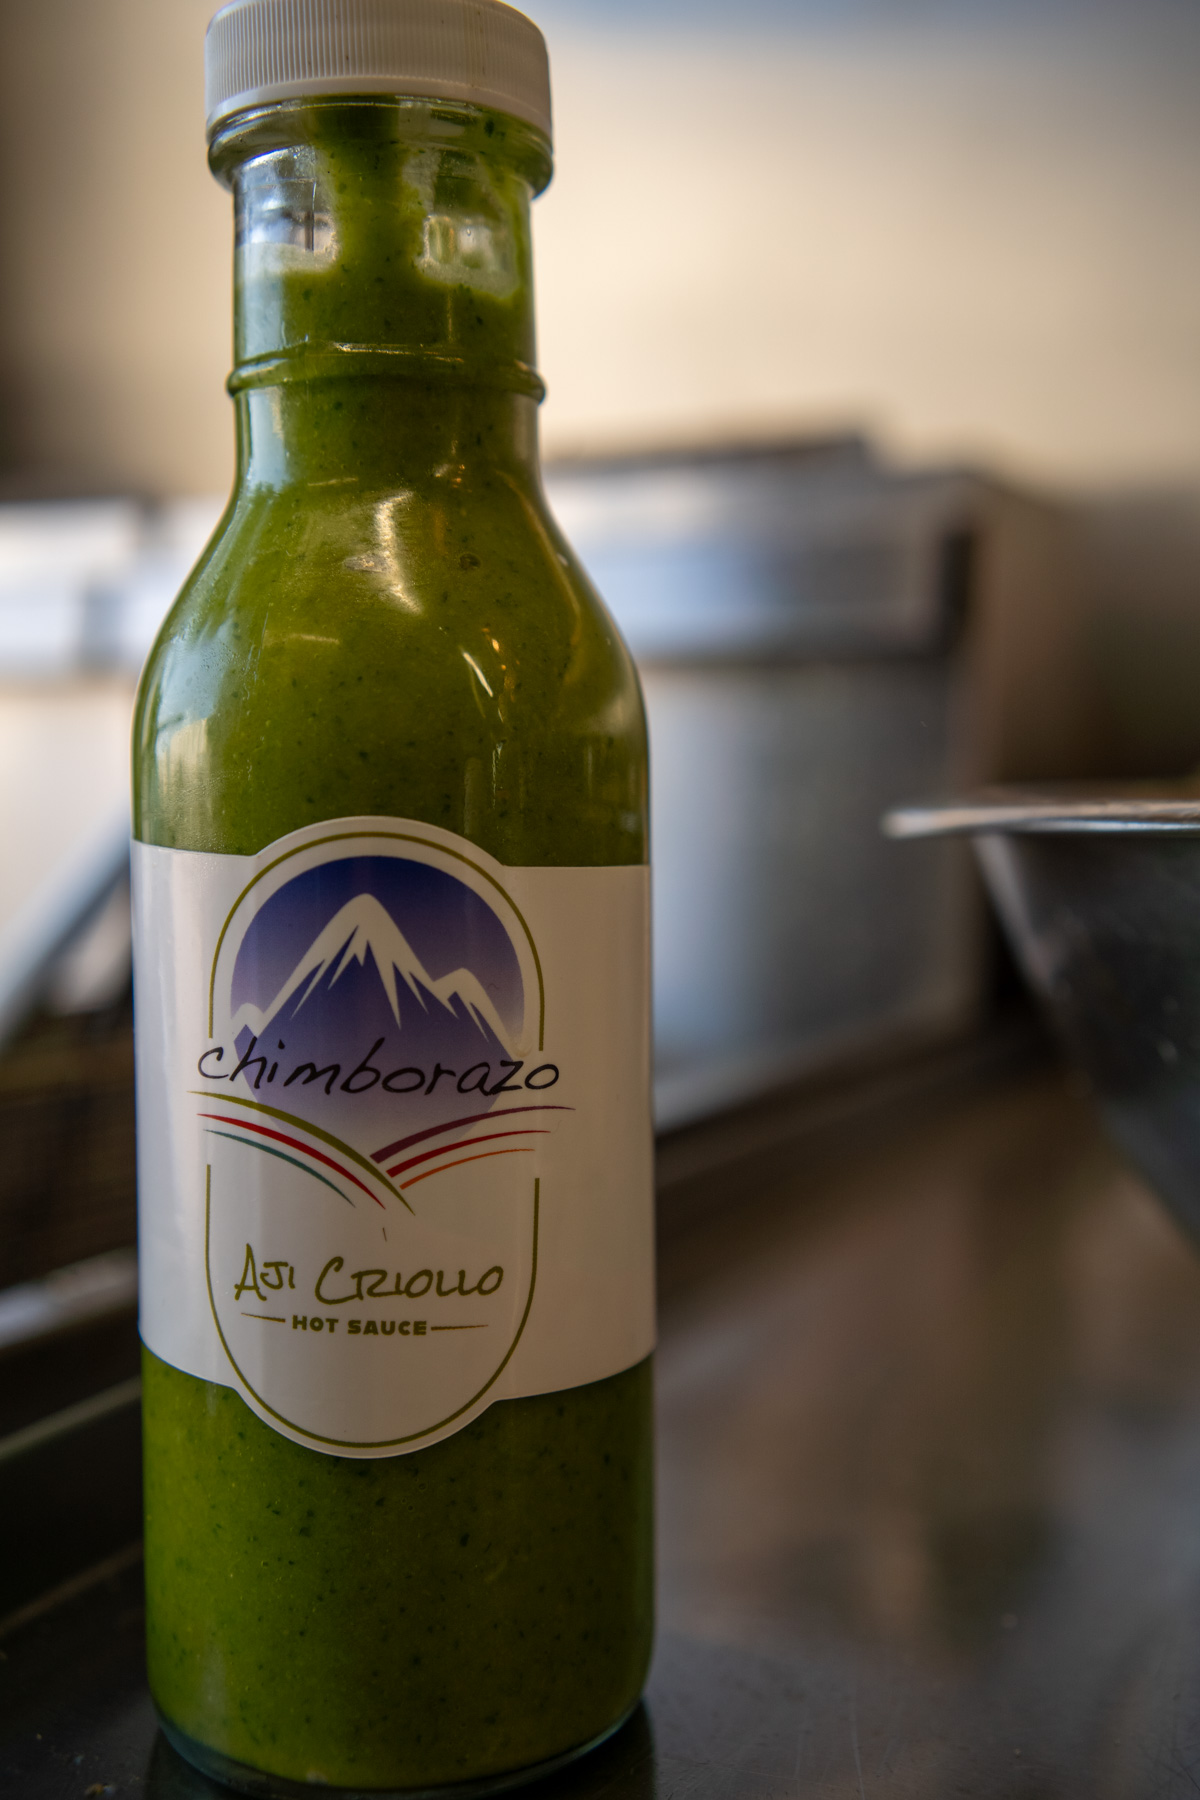 A bottle of Chimborazo's famous Aji Criollo.